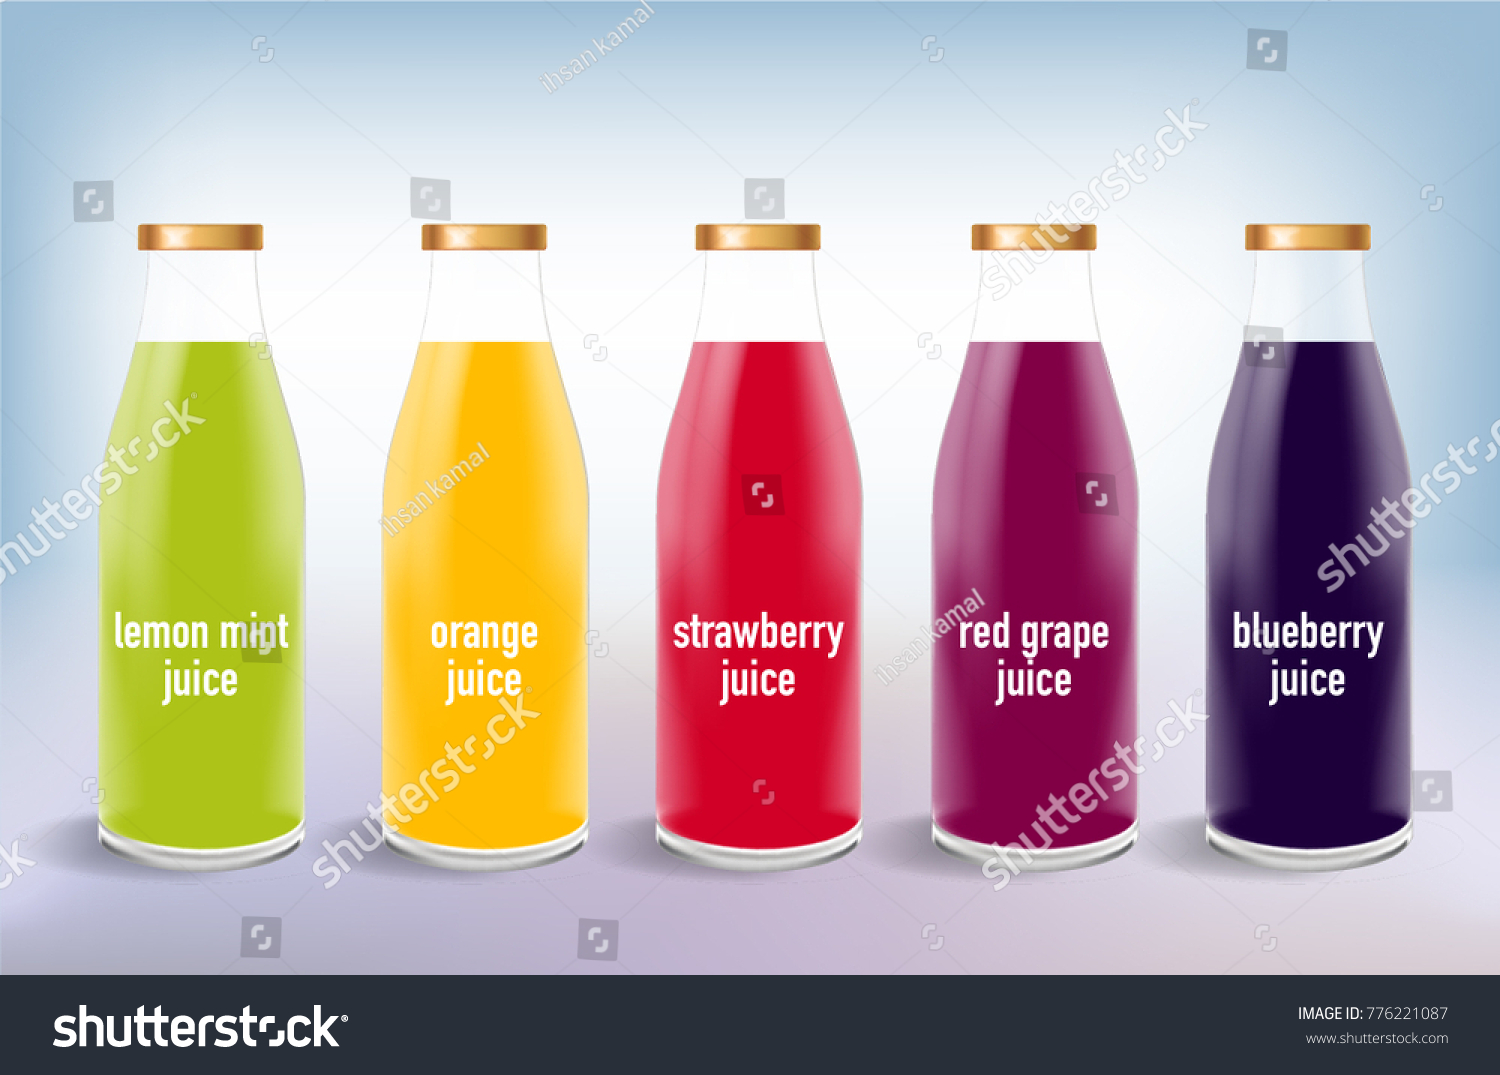 types of juice